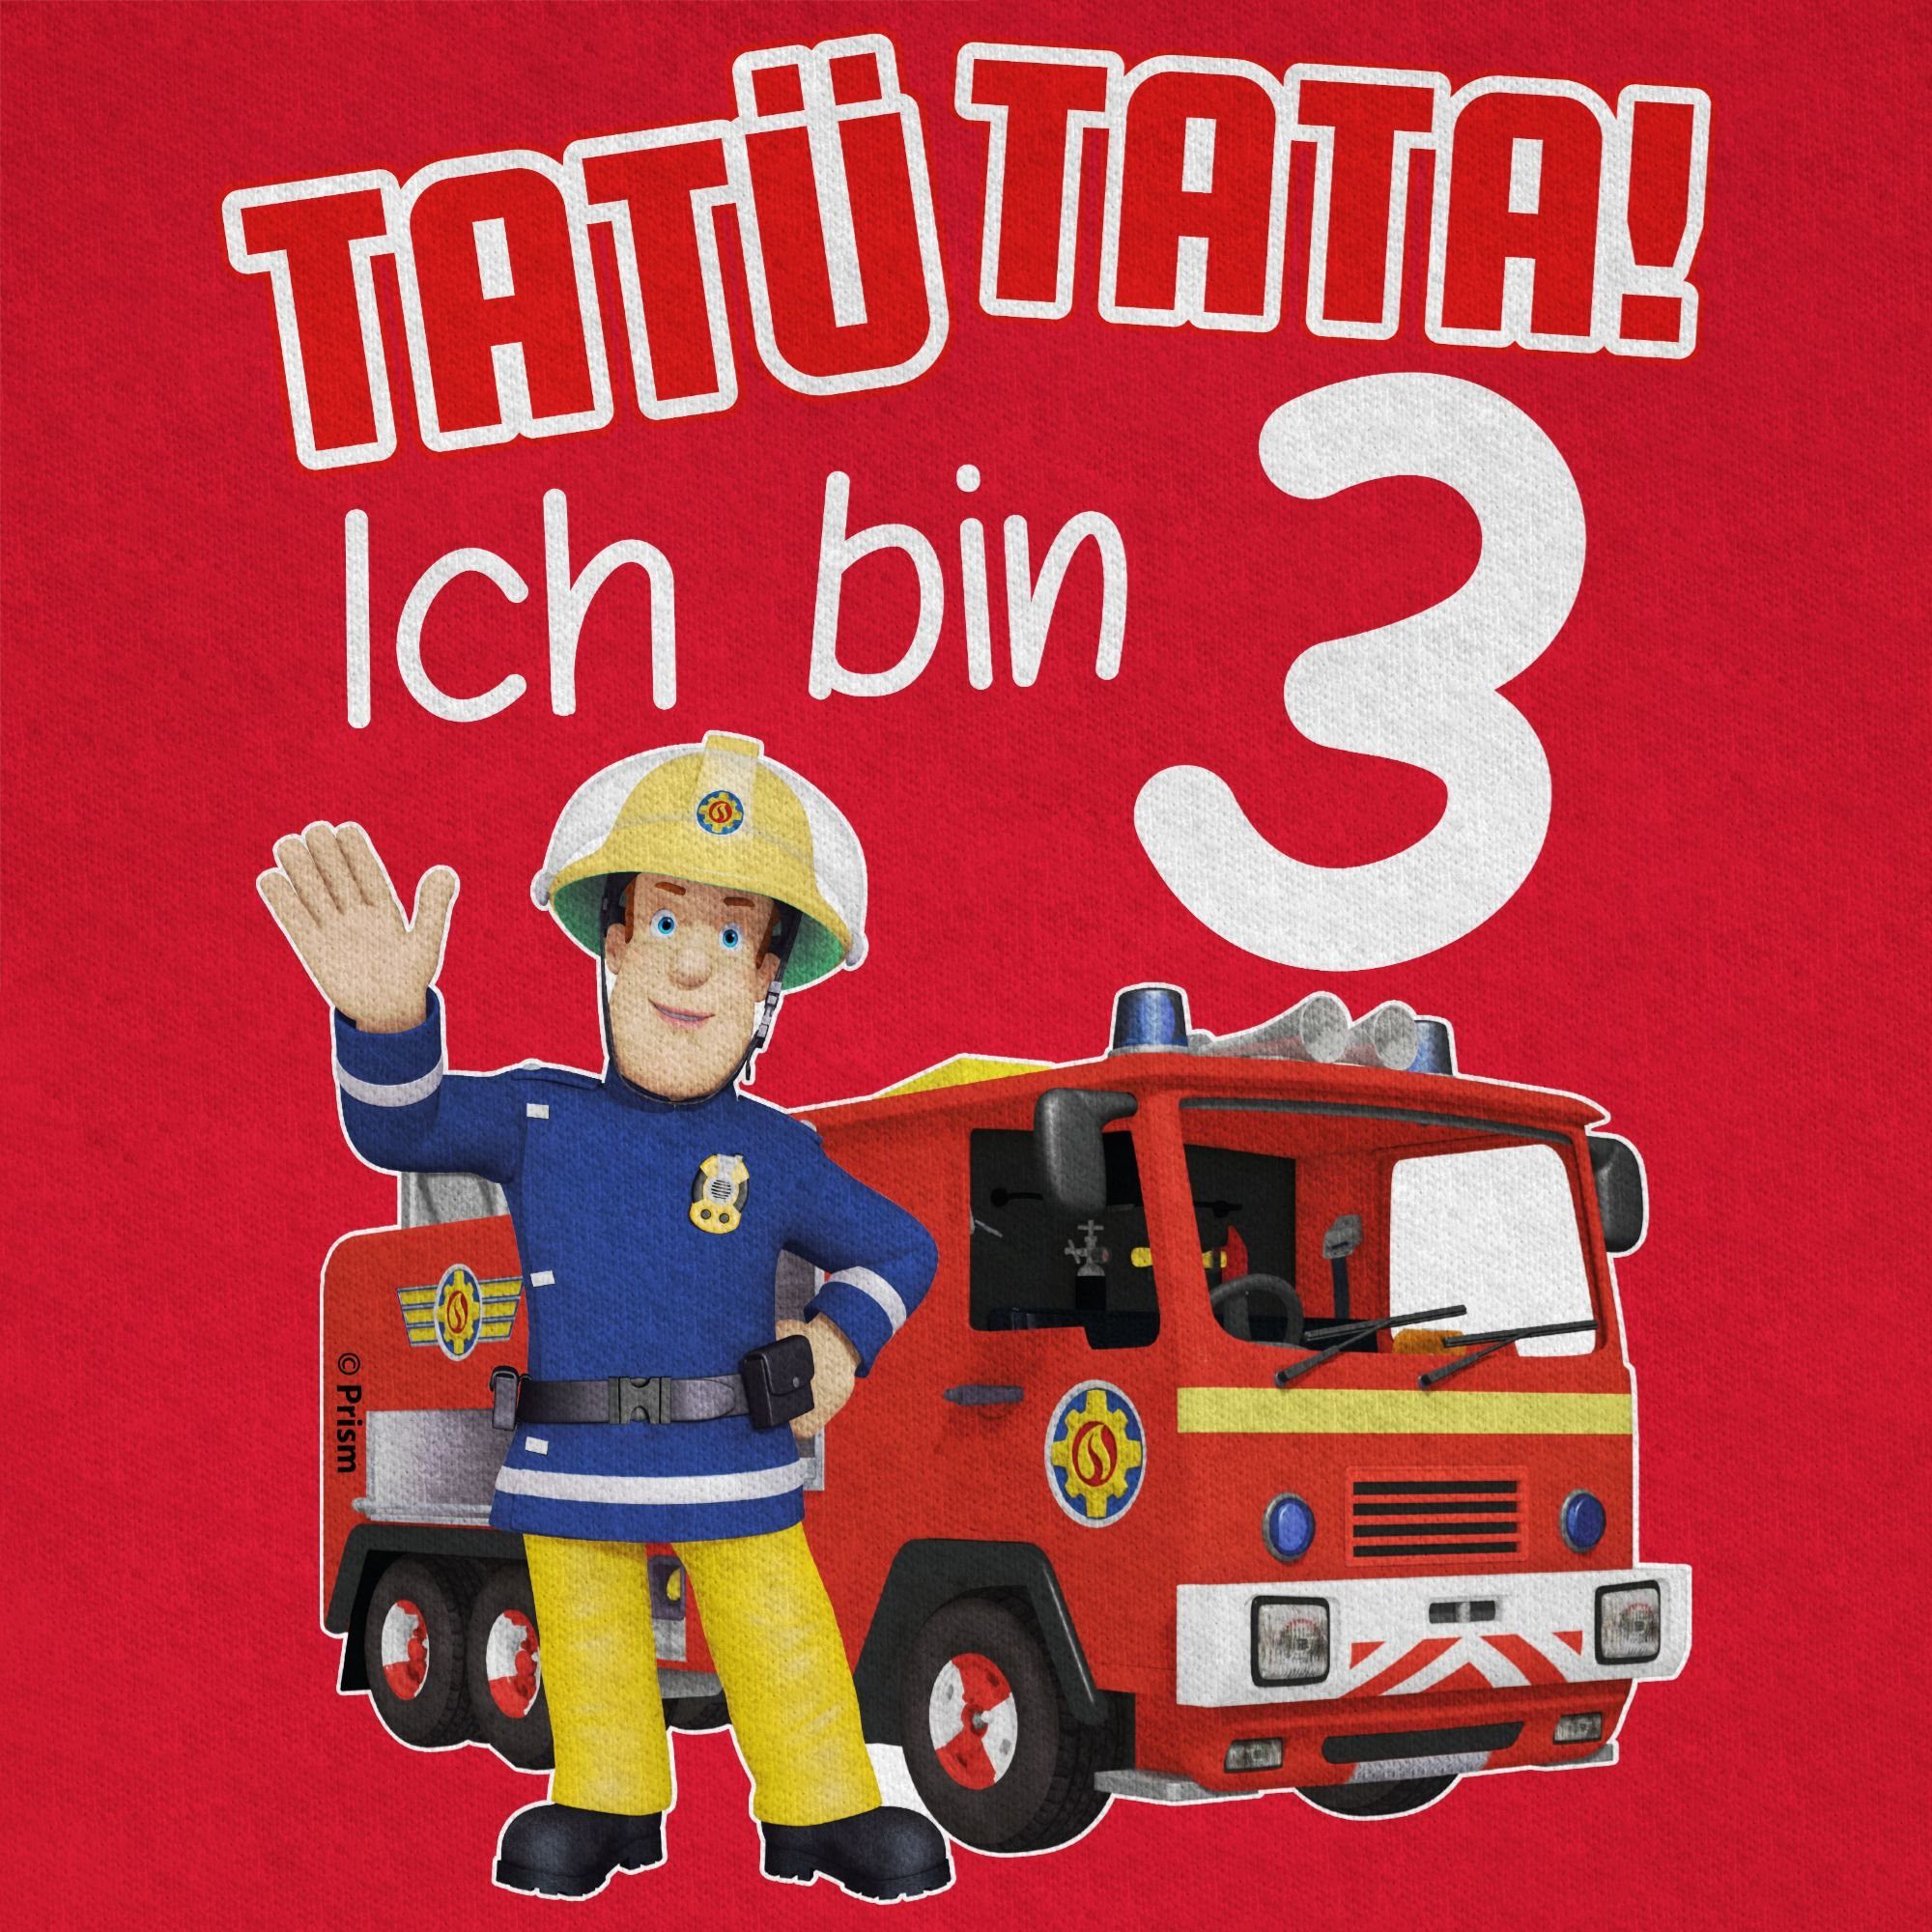 Geburtstag Jungen Sam Ich Tata! Tatü Rot Shirtracer Feuerwehrmann 03 T-Shirt 3 bin